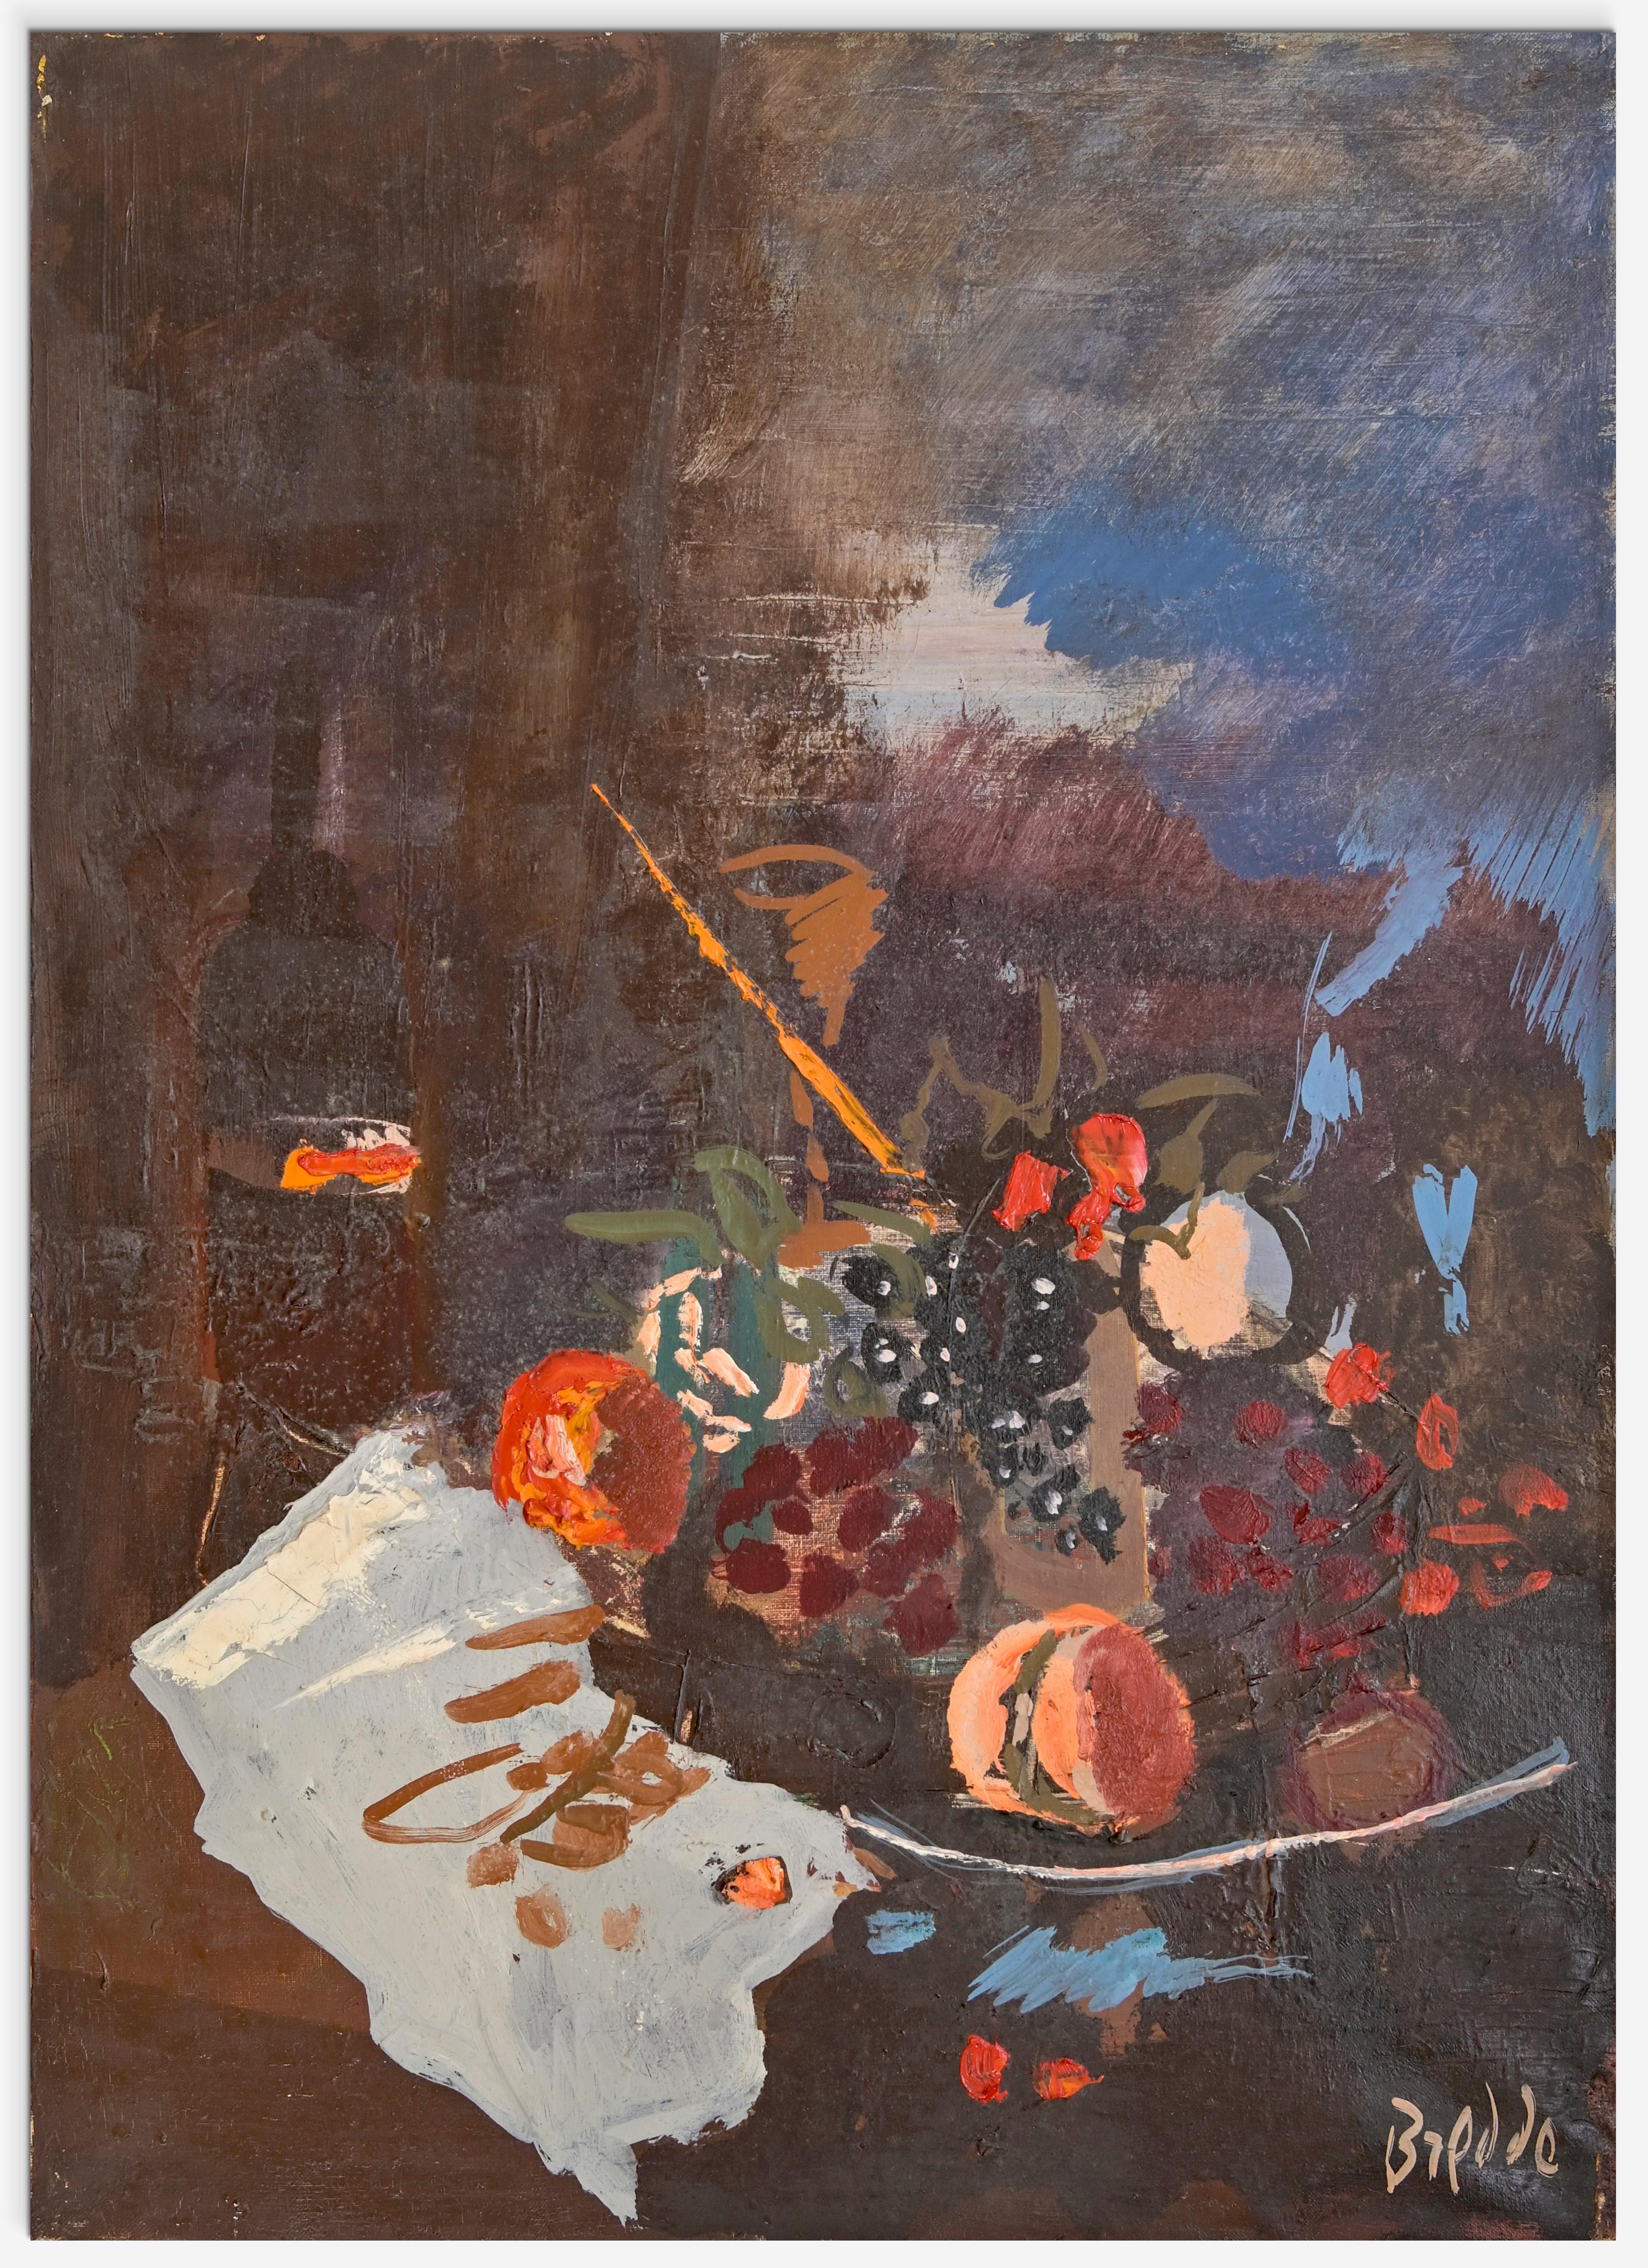 La nature morte est une œuvre d'art réalisée par Gastone Breddo dans la seconde moitié des années 90.  Peinture provenant de l'atelier de l'artiste à Livourne , cachet au dos. 

70x 50 cm avec cadre. Huile sur toile.

Signé à la main dans la marge